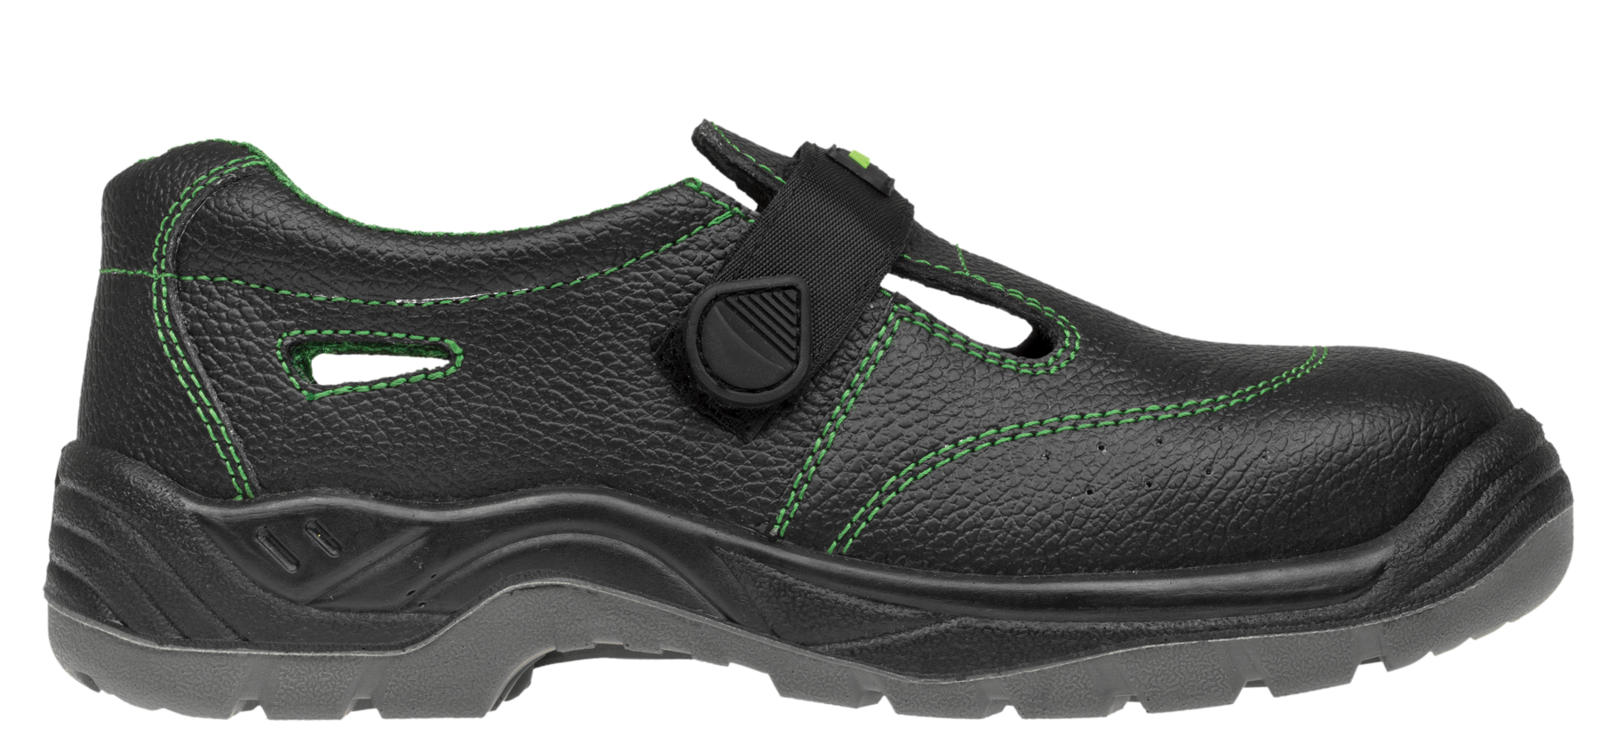 Bezpečnostné sandále Adamant Classic S1 - veľkosť: 41, farba: čierna